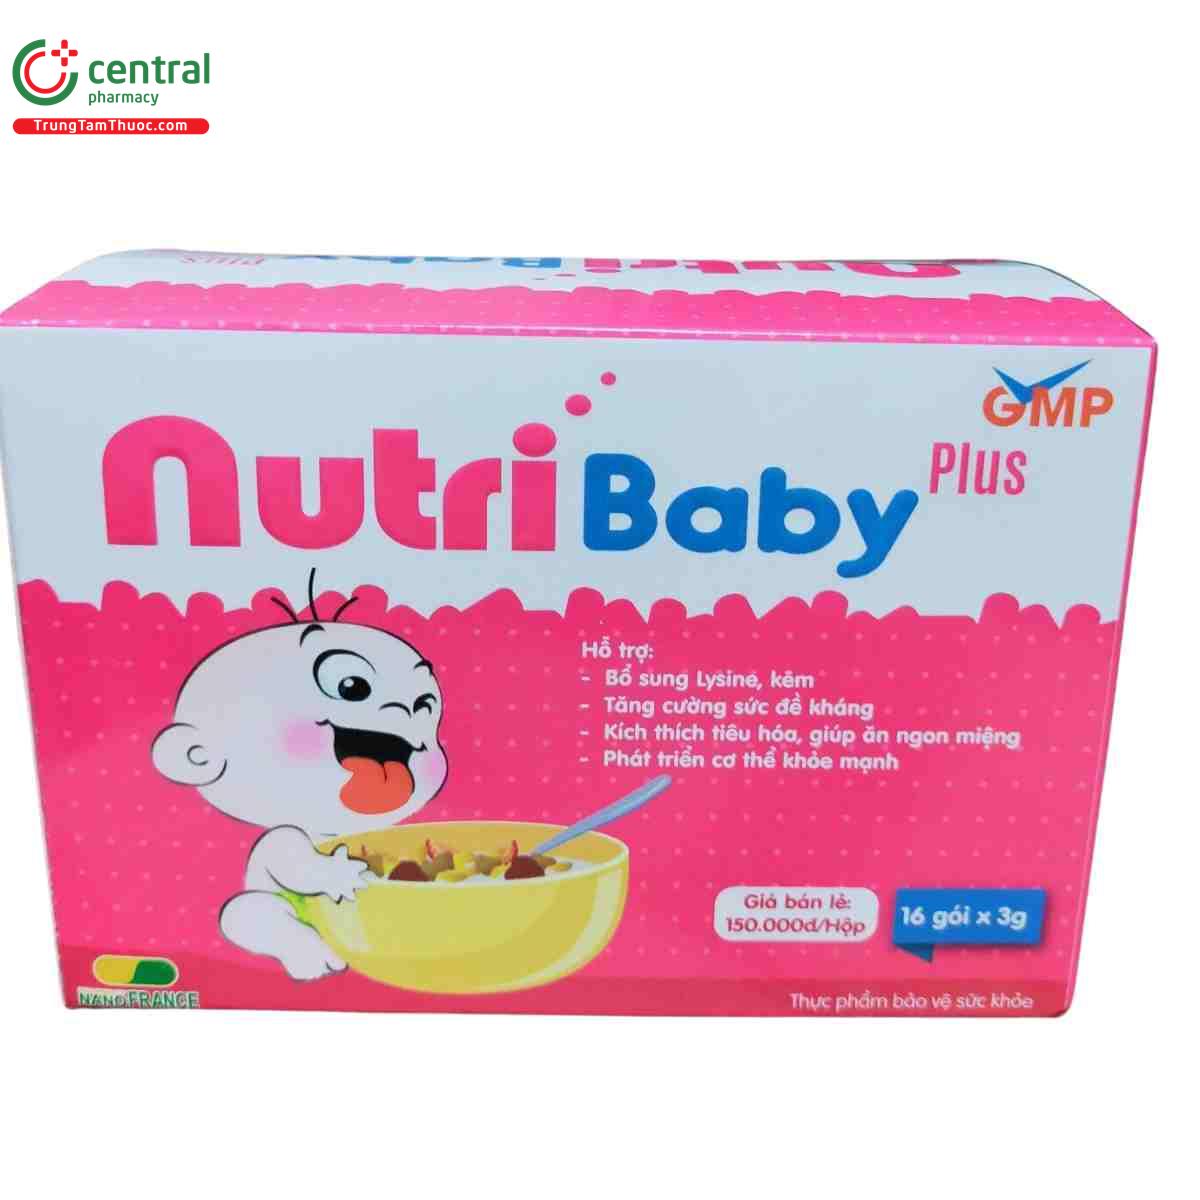 nutri baby plus 9 K4547